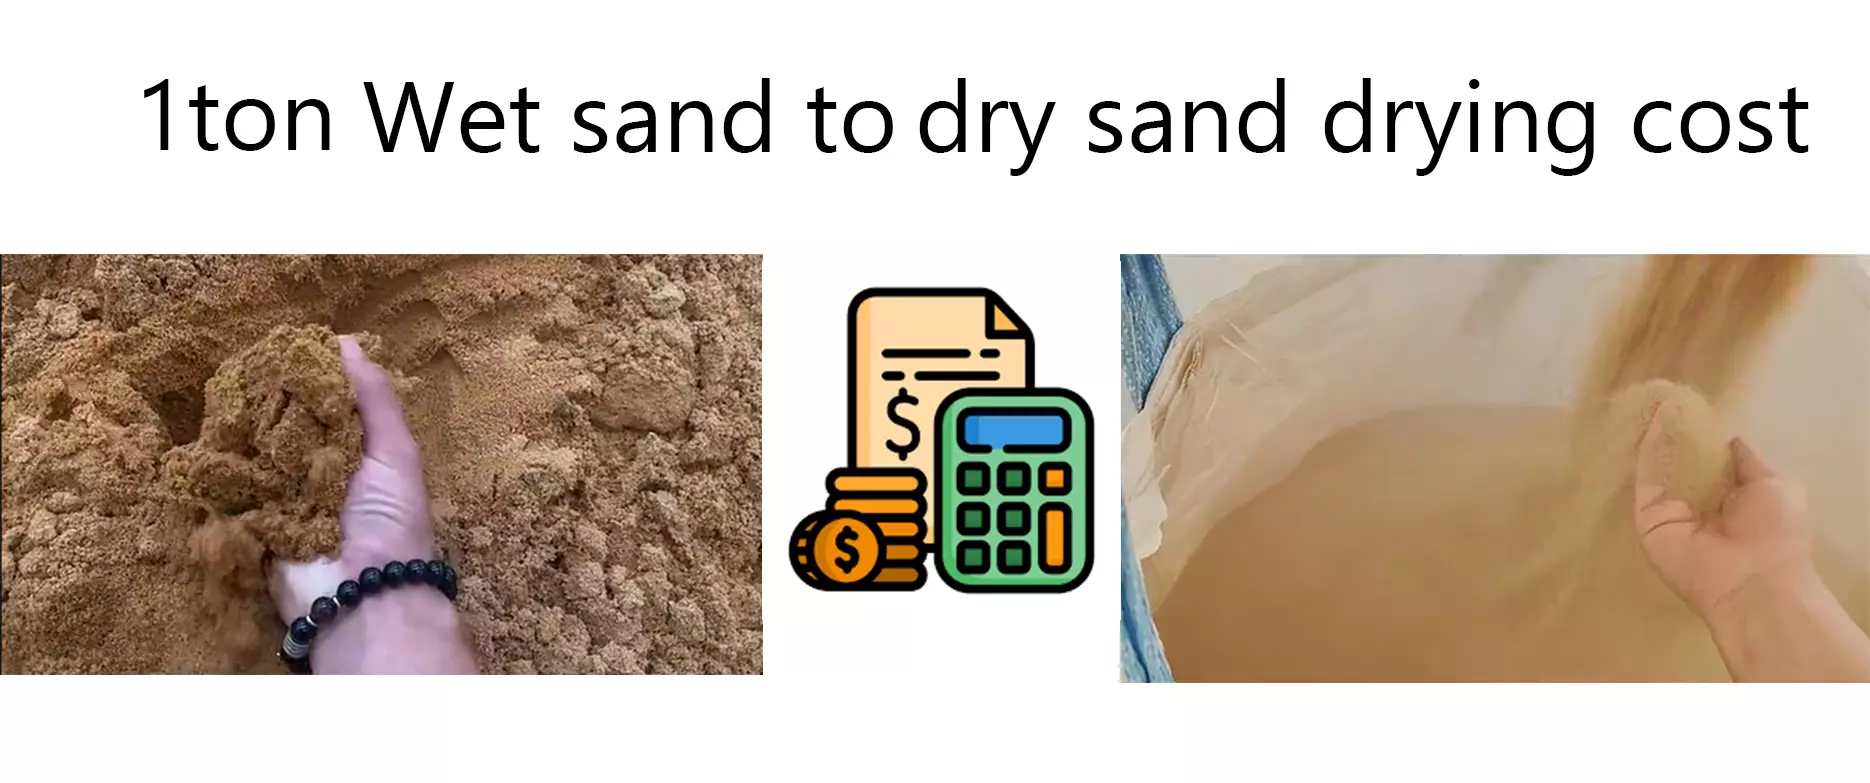 Analiza stroškov sušenja 1 tone mokrega peska v suh pesek